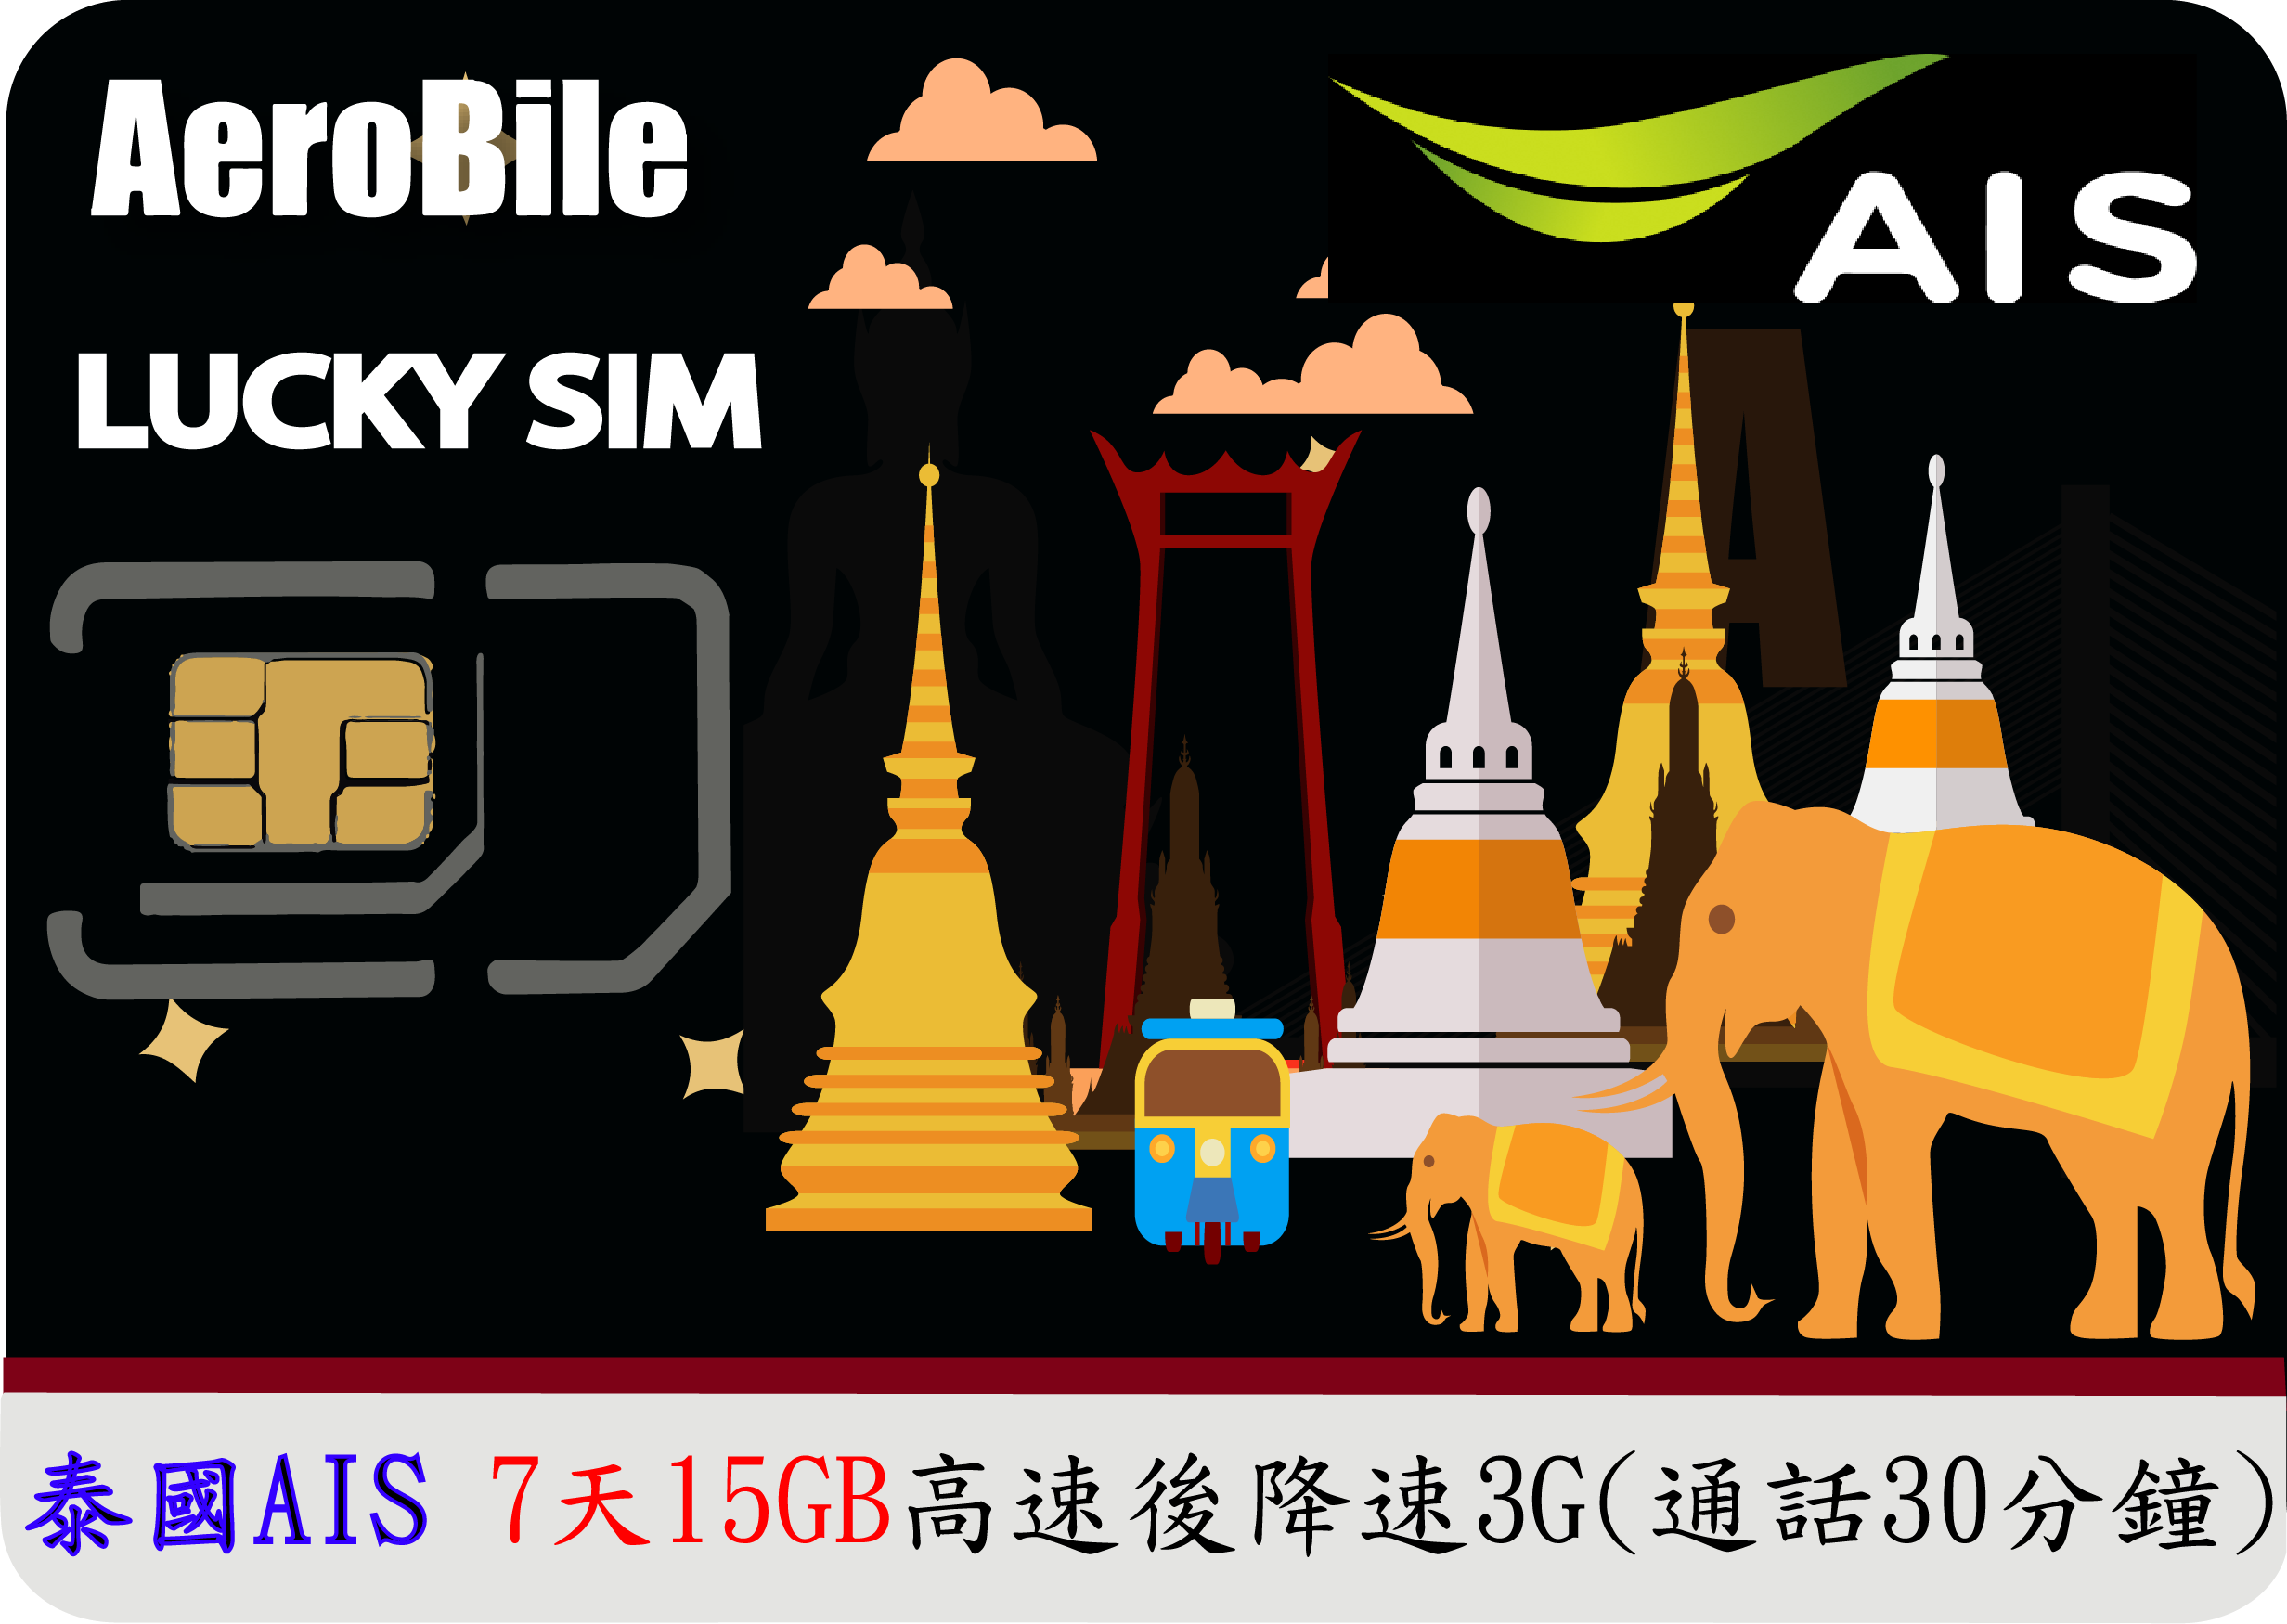 泰國幸運卡【泰國AIS】- Lucky Sim【7日】+30分通話   (不用註冊，插卡即用)泰國最大電信，品質佳